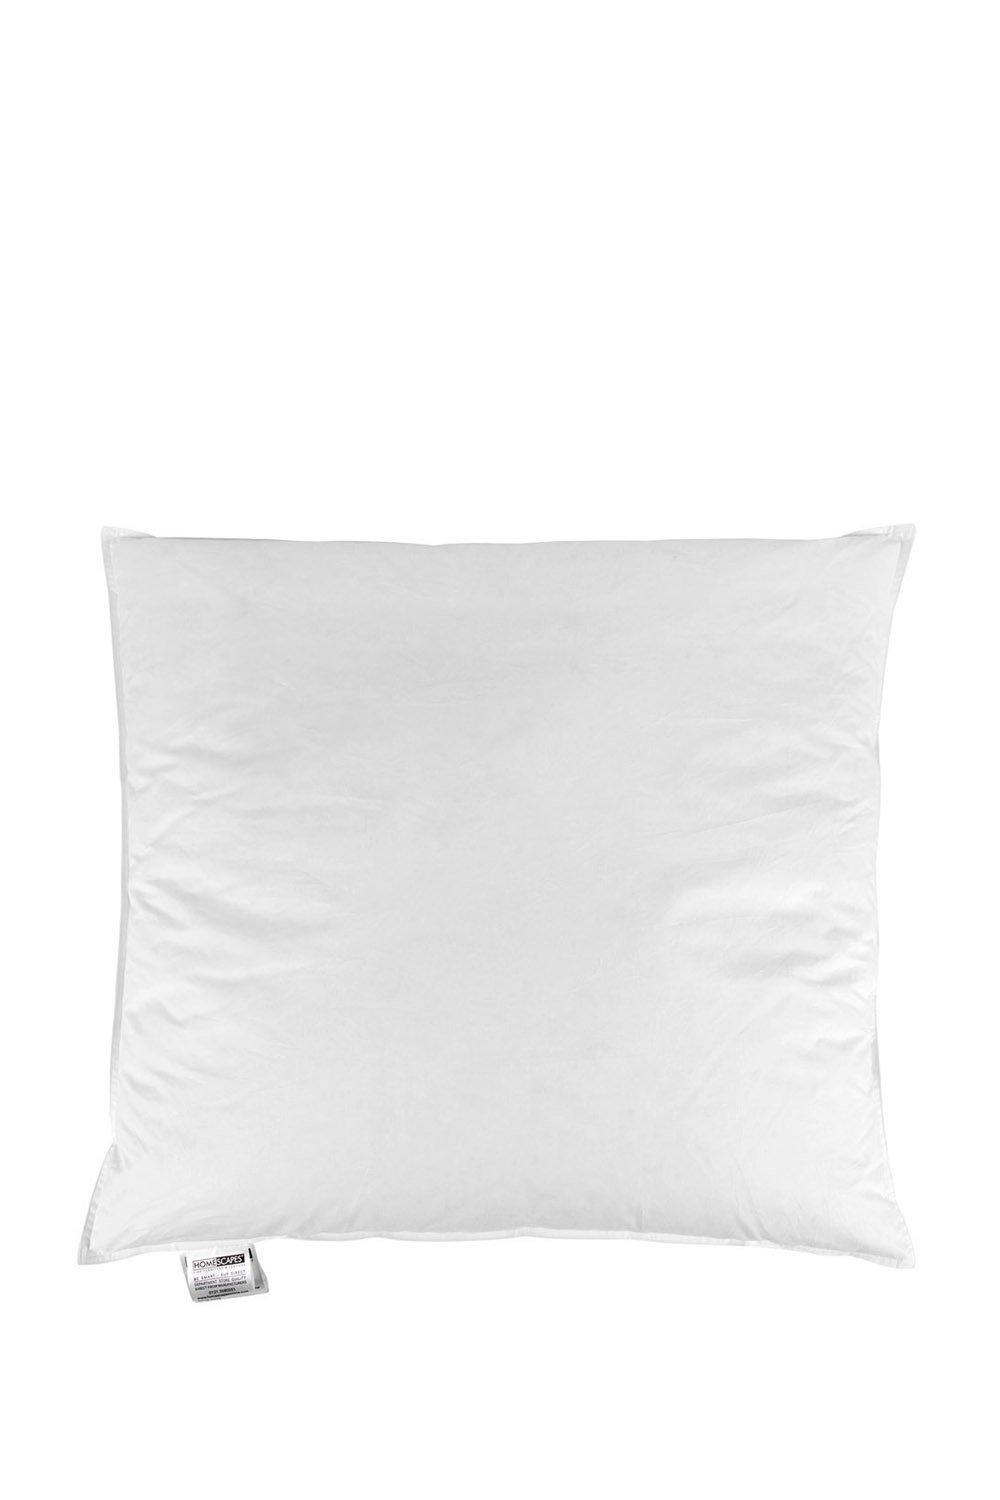 Premium Goose Down Euro Square Pillow 65 x 65 cm